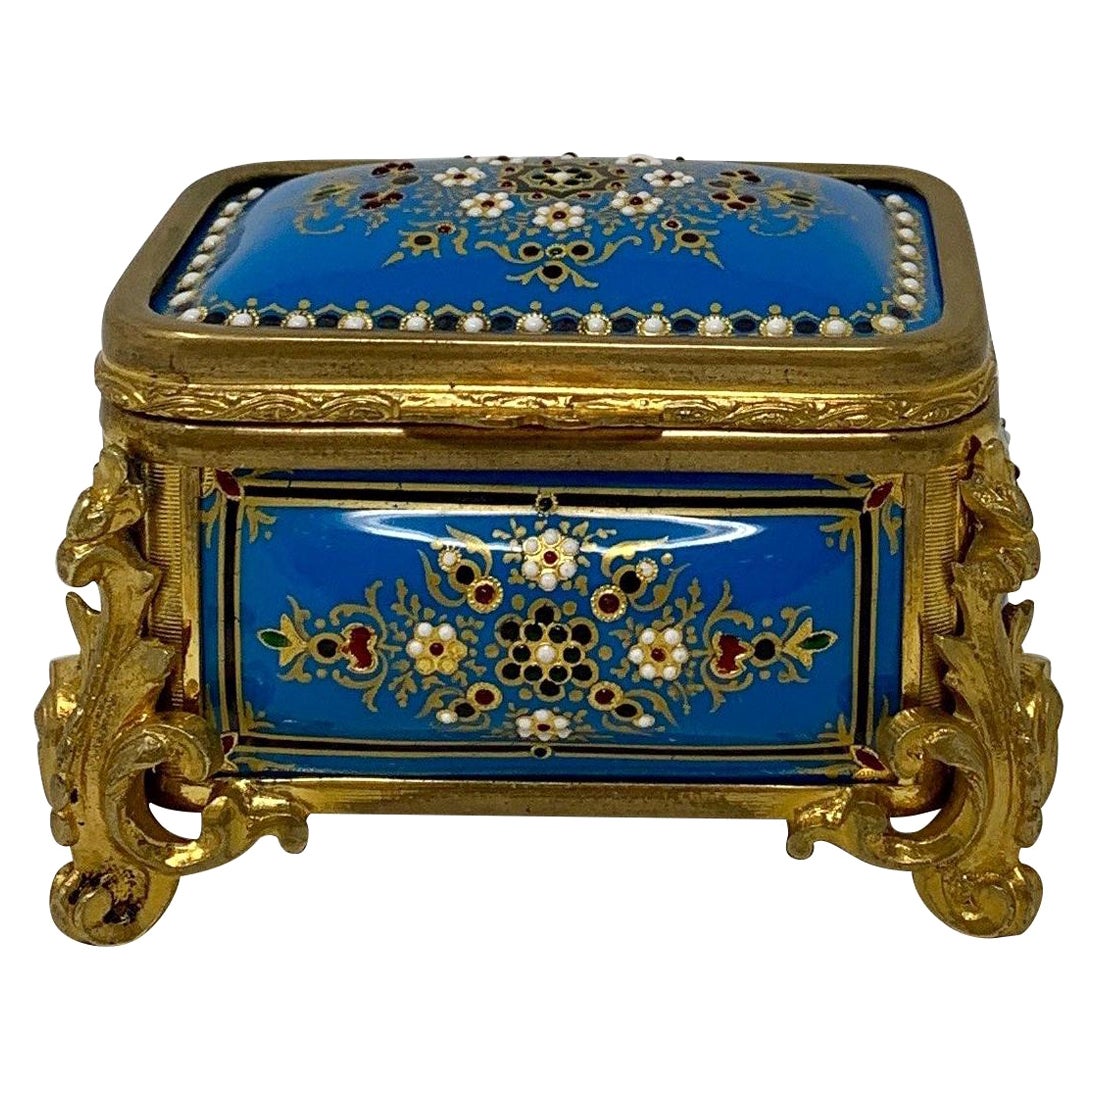 Ancienne boîte française émaillée bleue